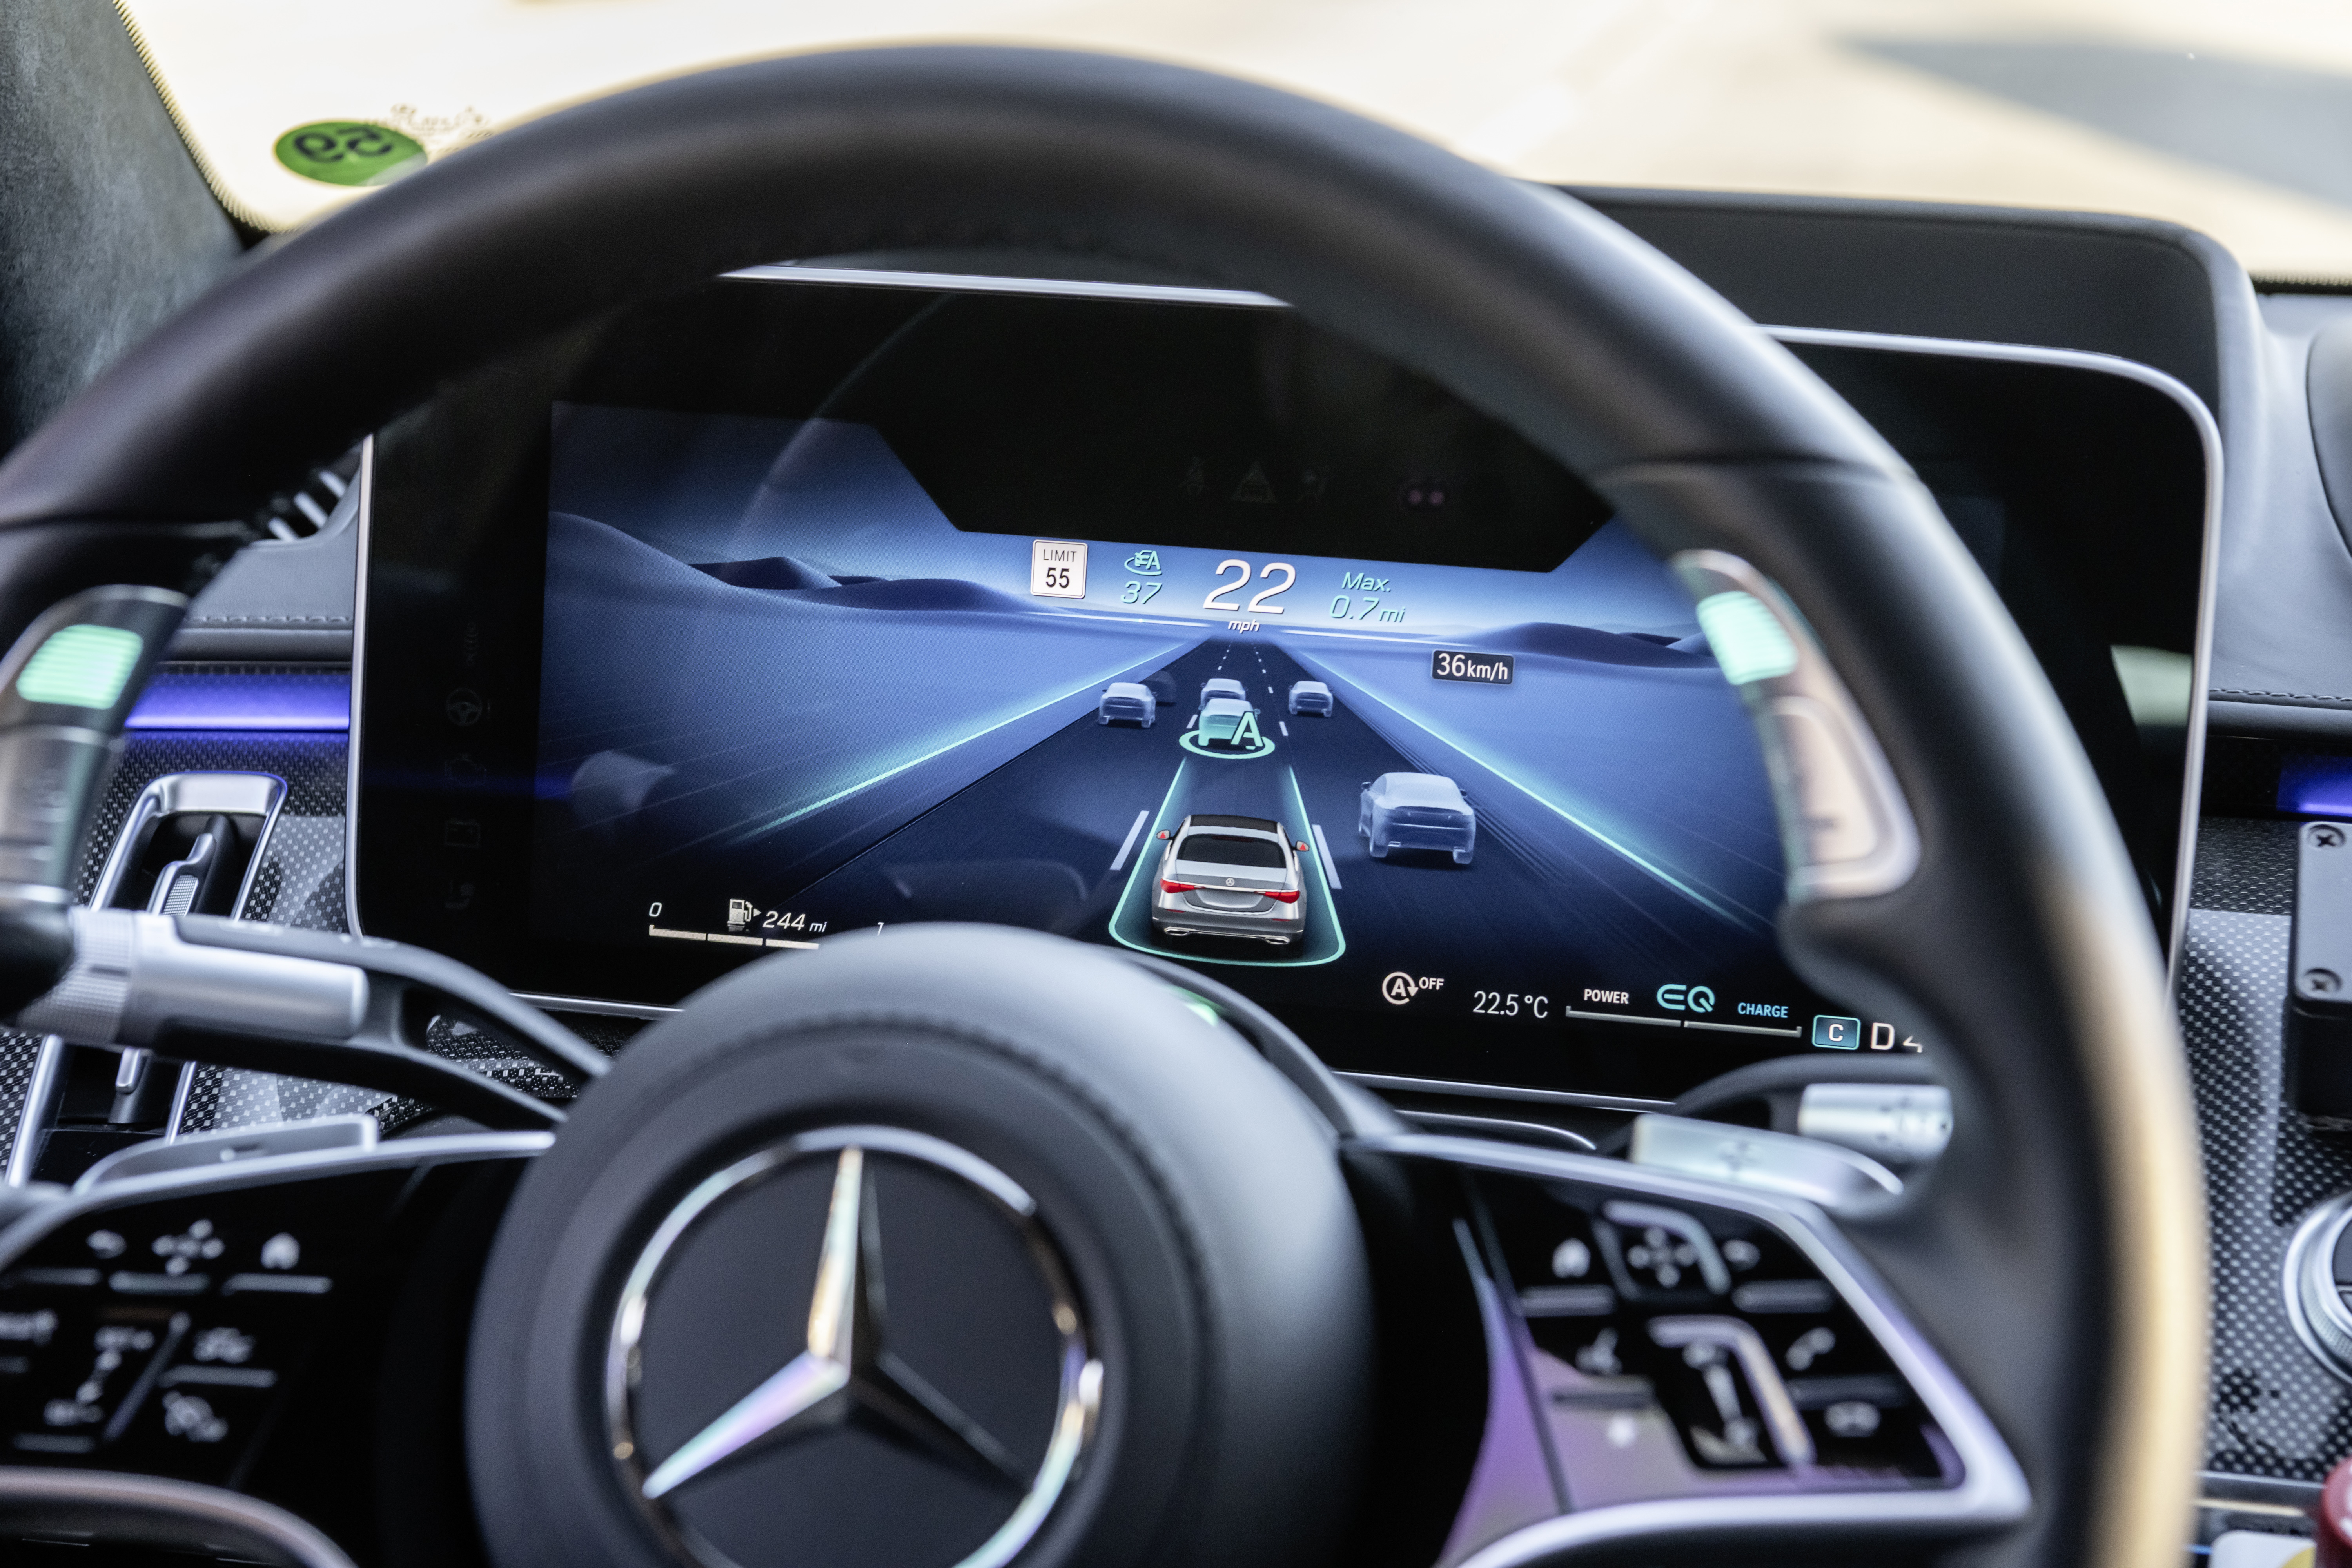 Drive Pilot, Mercedes, EQS, Conduite niveau 3, conduite autonome, Distronic
Distronic plus EQ